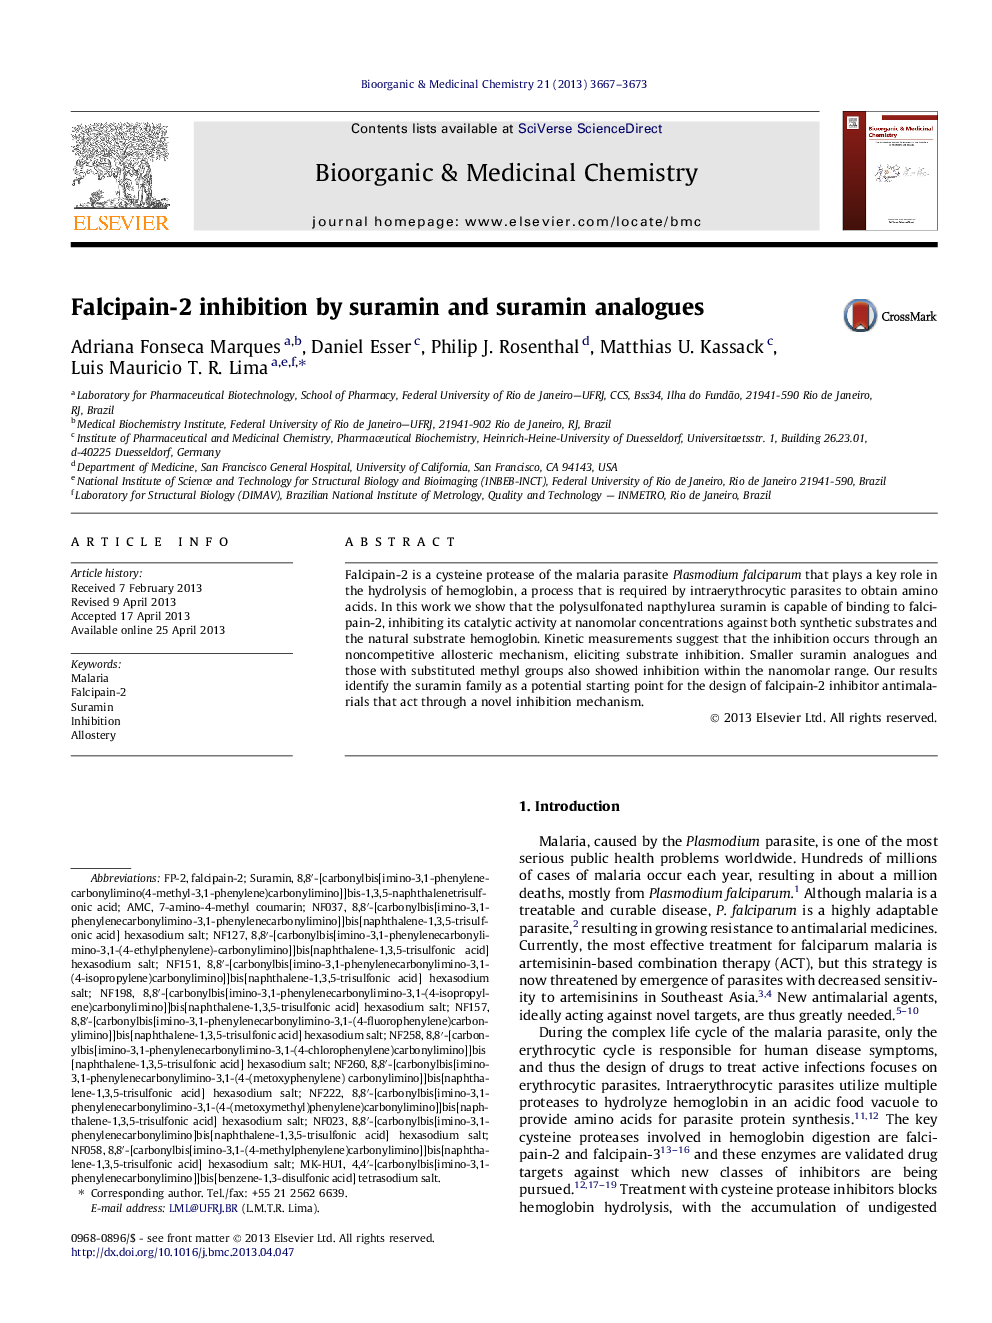 Falcipain-2 inhibition by suramin and suramin analogues